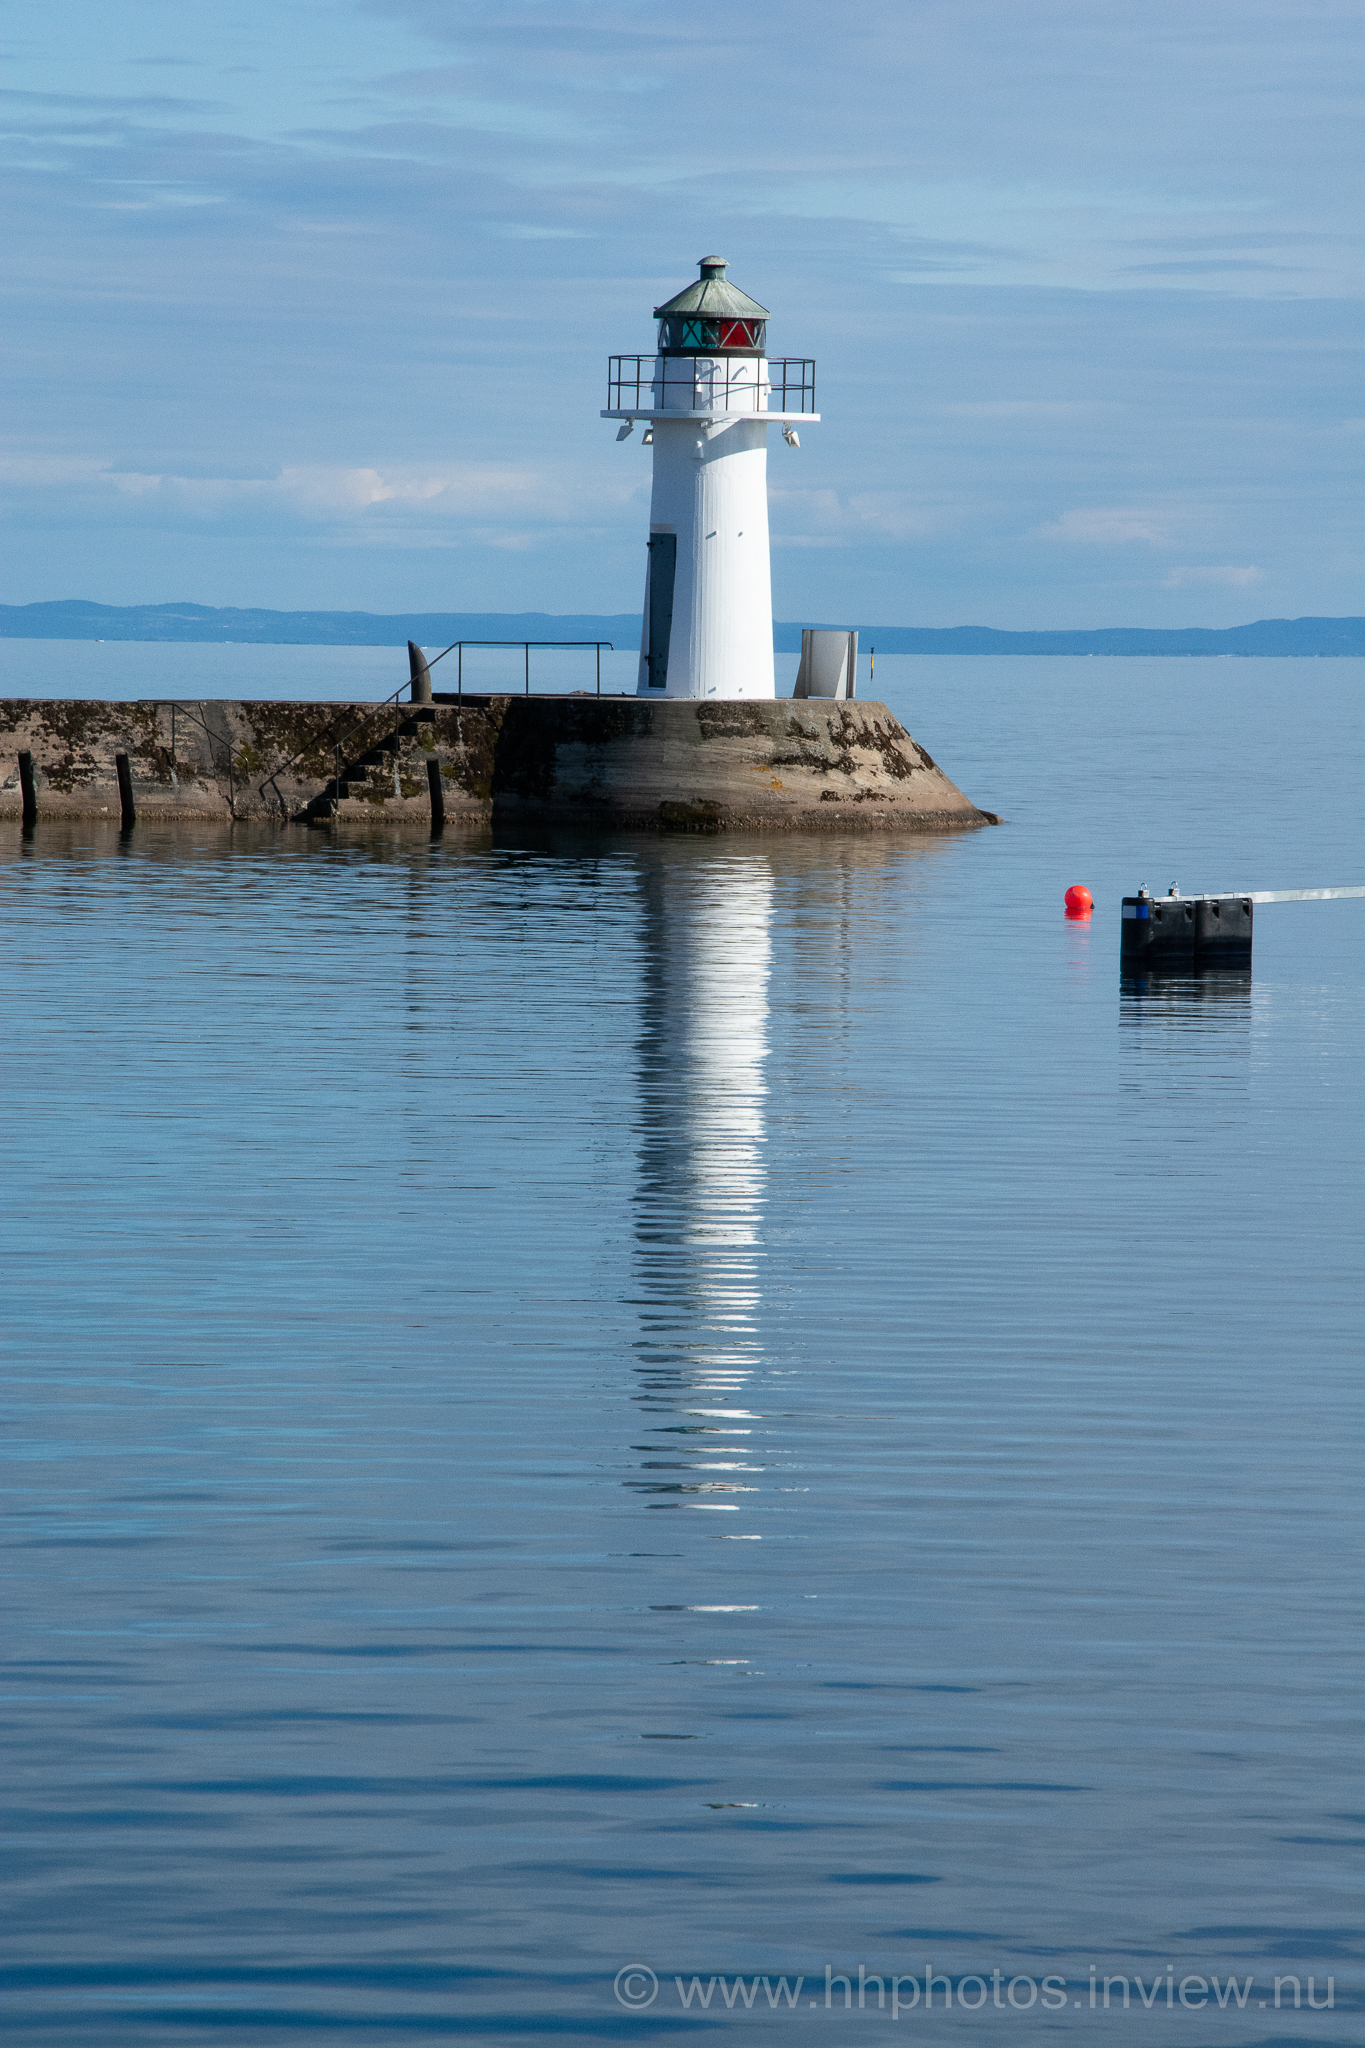 Fyr i Hjo hamn / Lighthouse at Hjo Marina